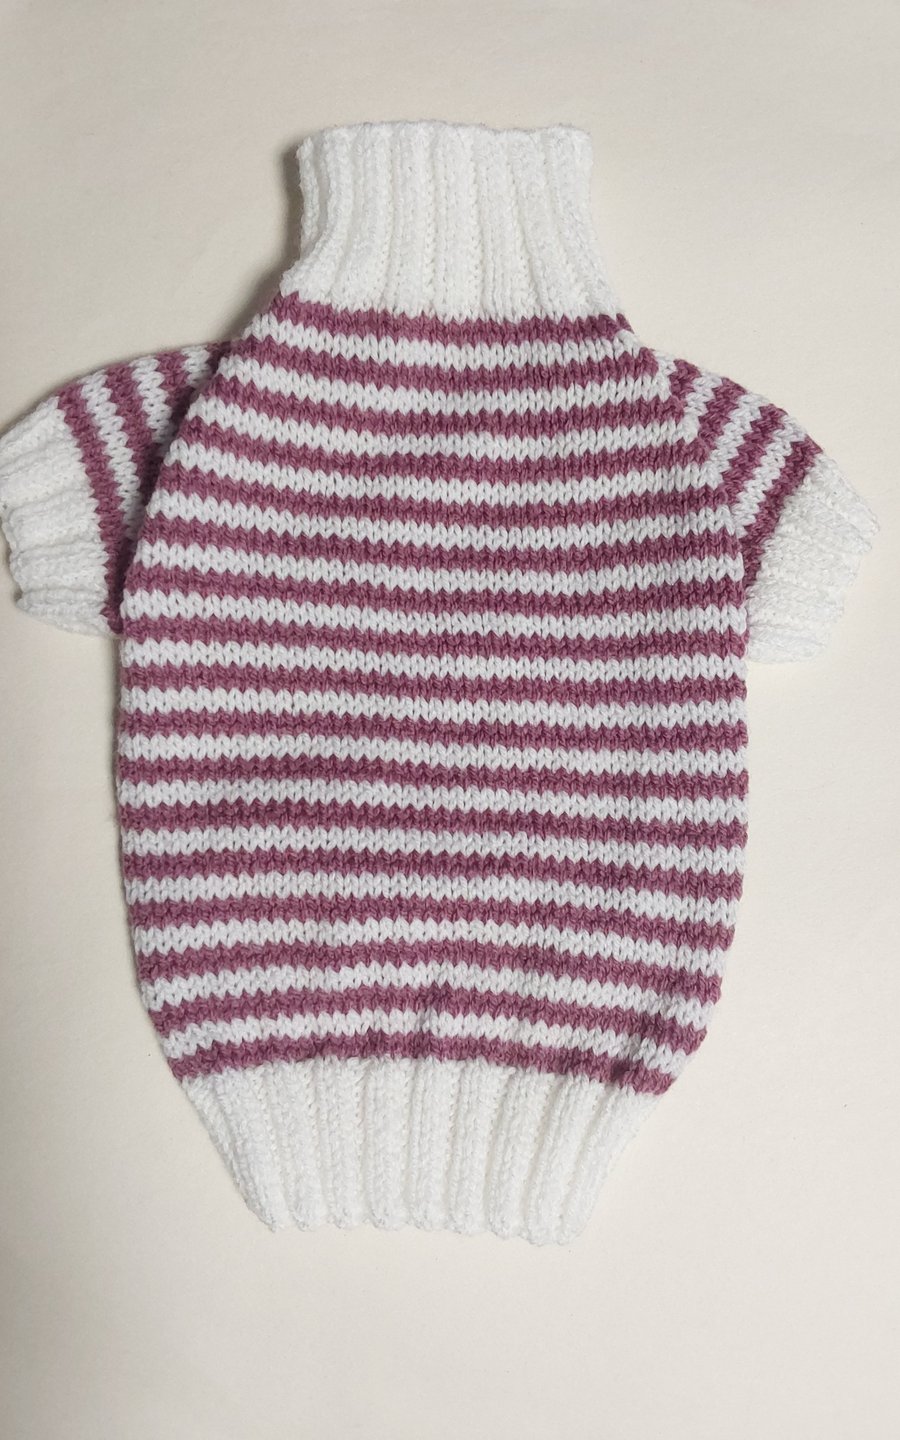 Medium dog puppy sweater jumper coat 14”L 16”G hand knit (raglan sleeved)